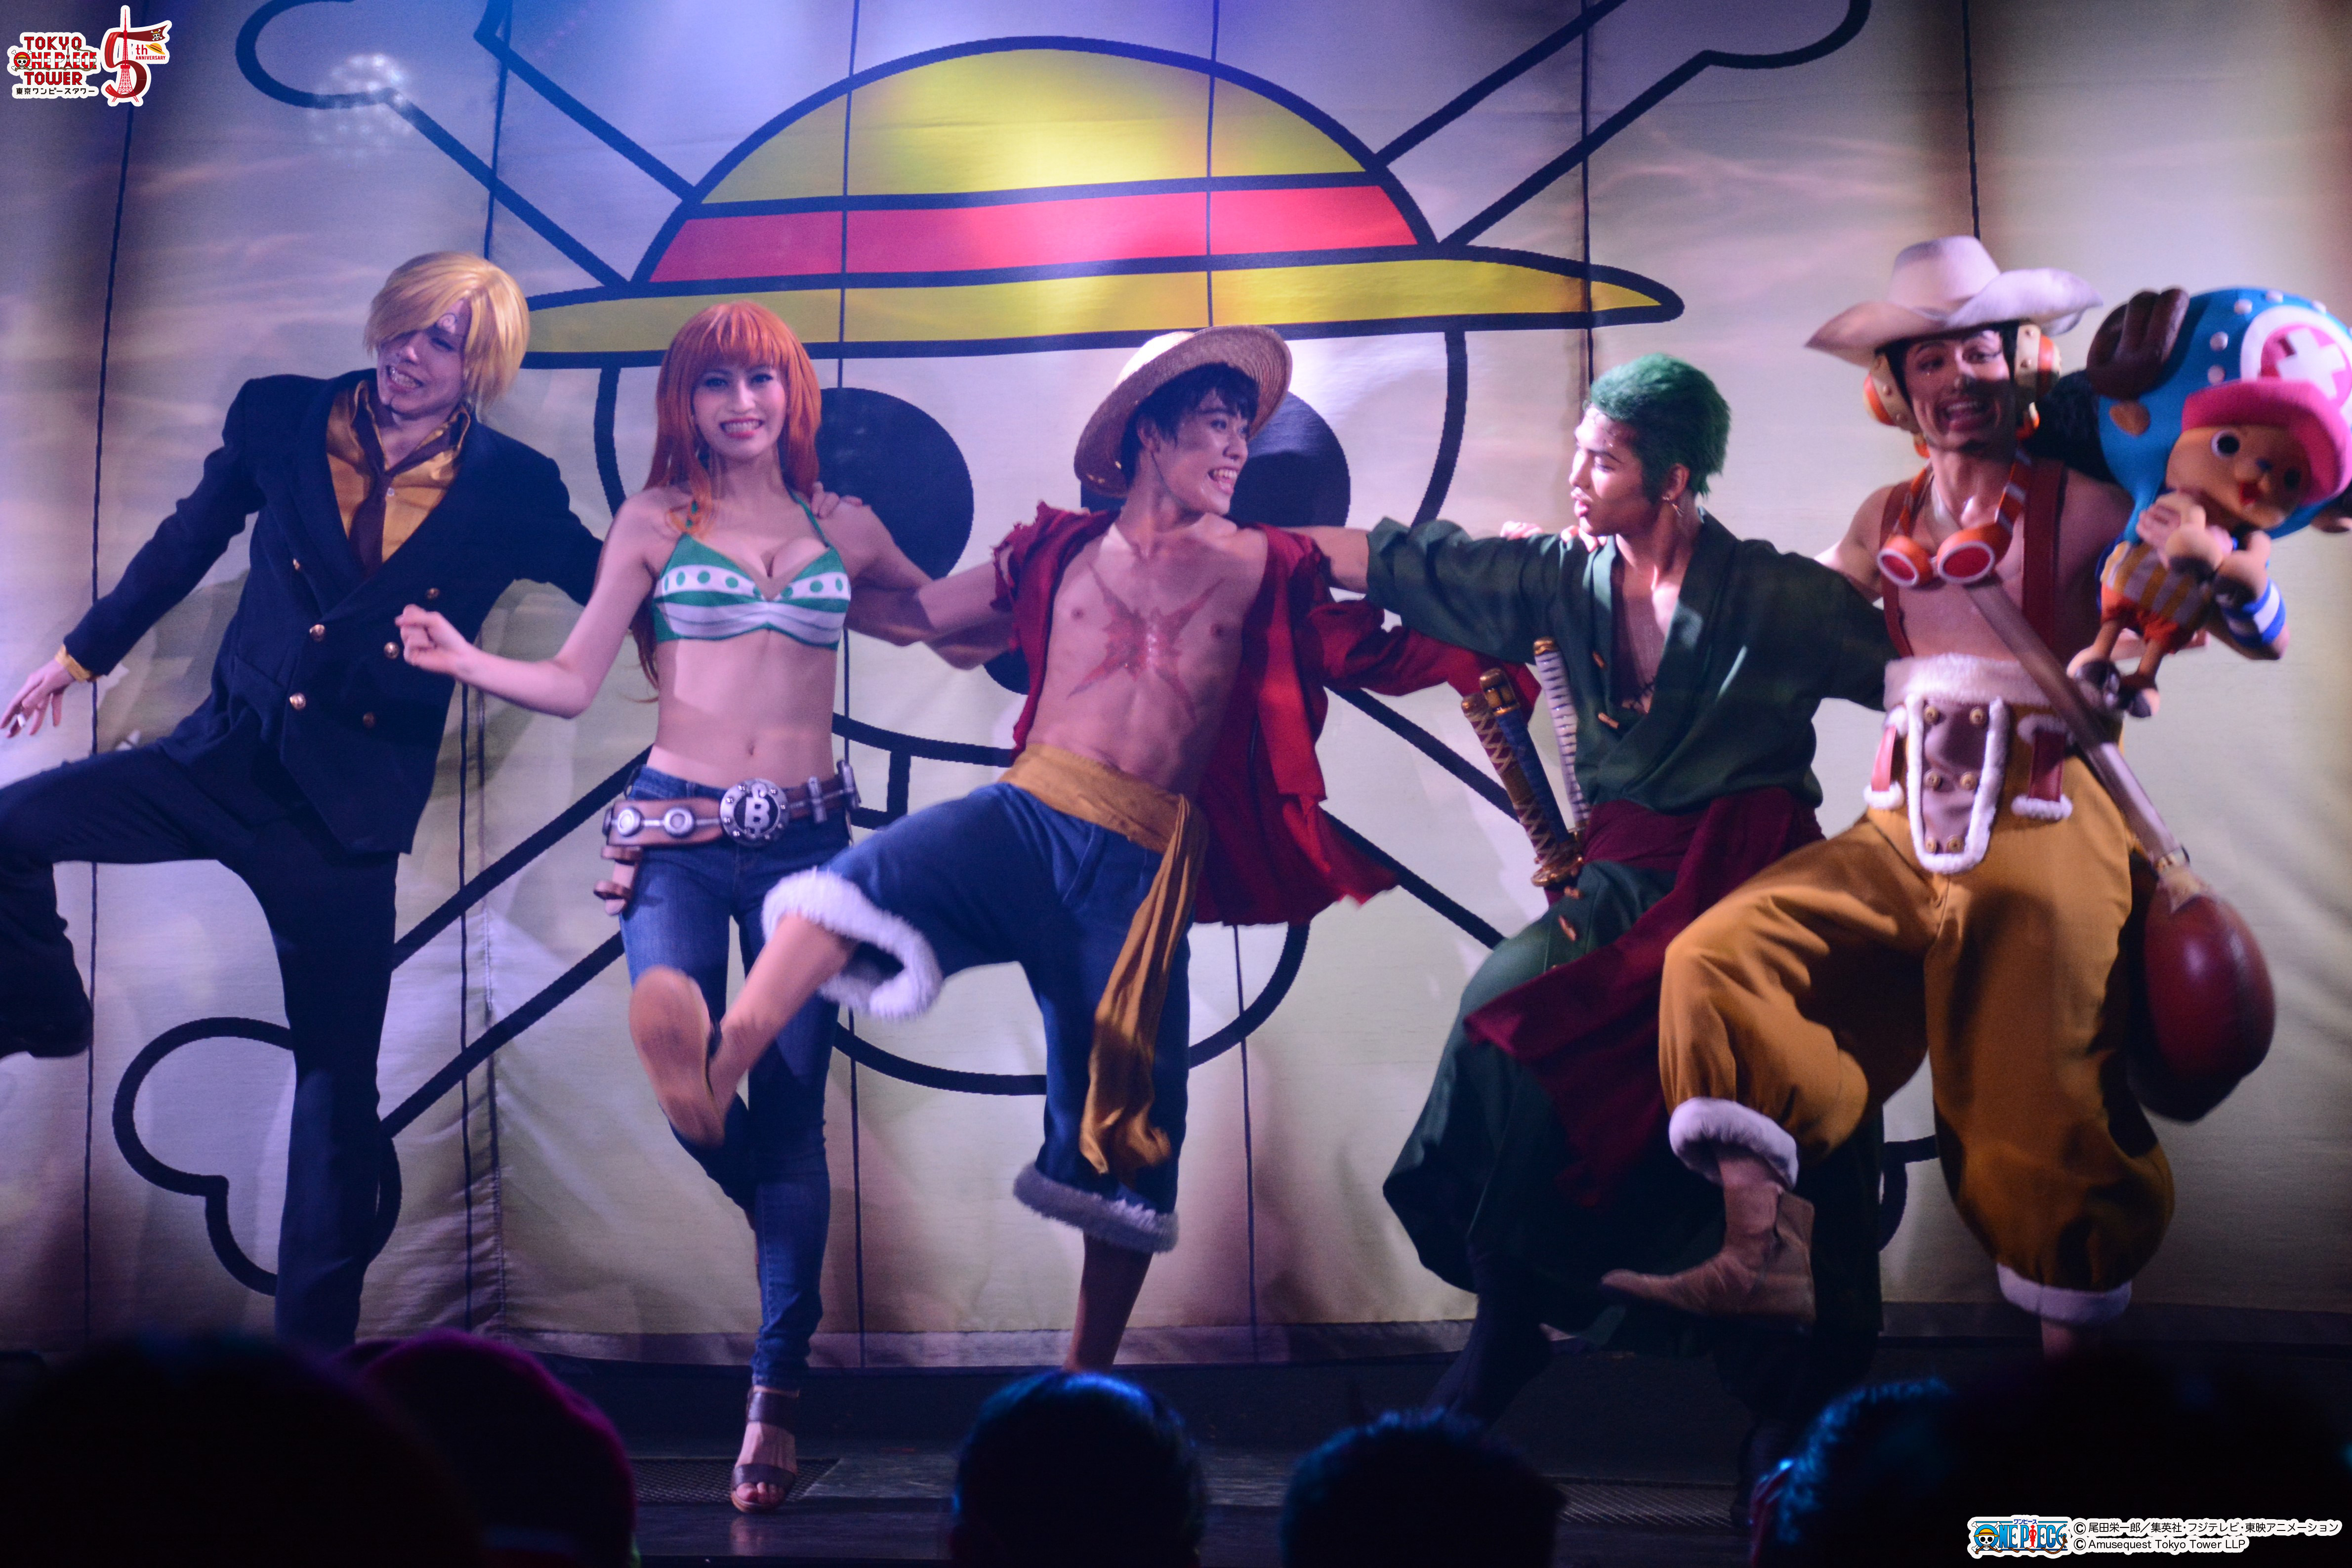 One Piece Live Attraction Marionette 3月8日 日 ファイナル公演をyoutubeで世界中にlive配信 新キャストを迎え3月18日 水 より再スタートが決定 東京 ワンピースタワーのプレスリリース